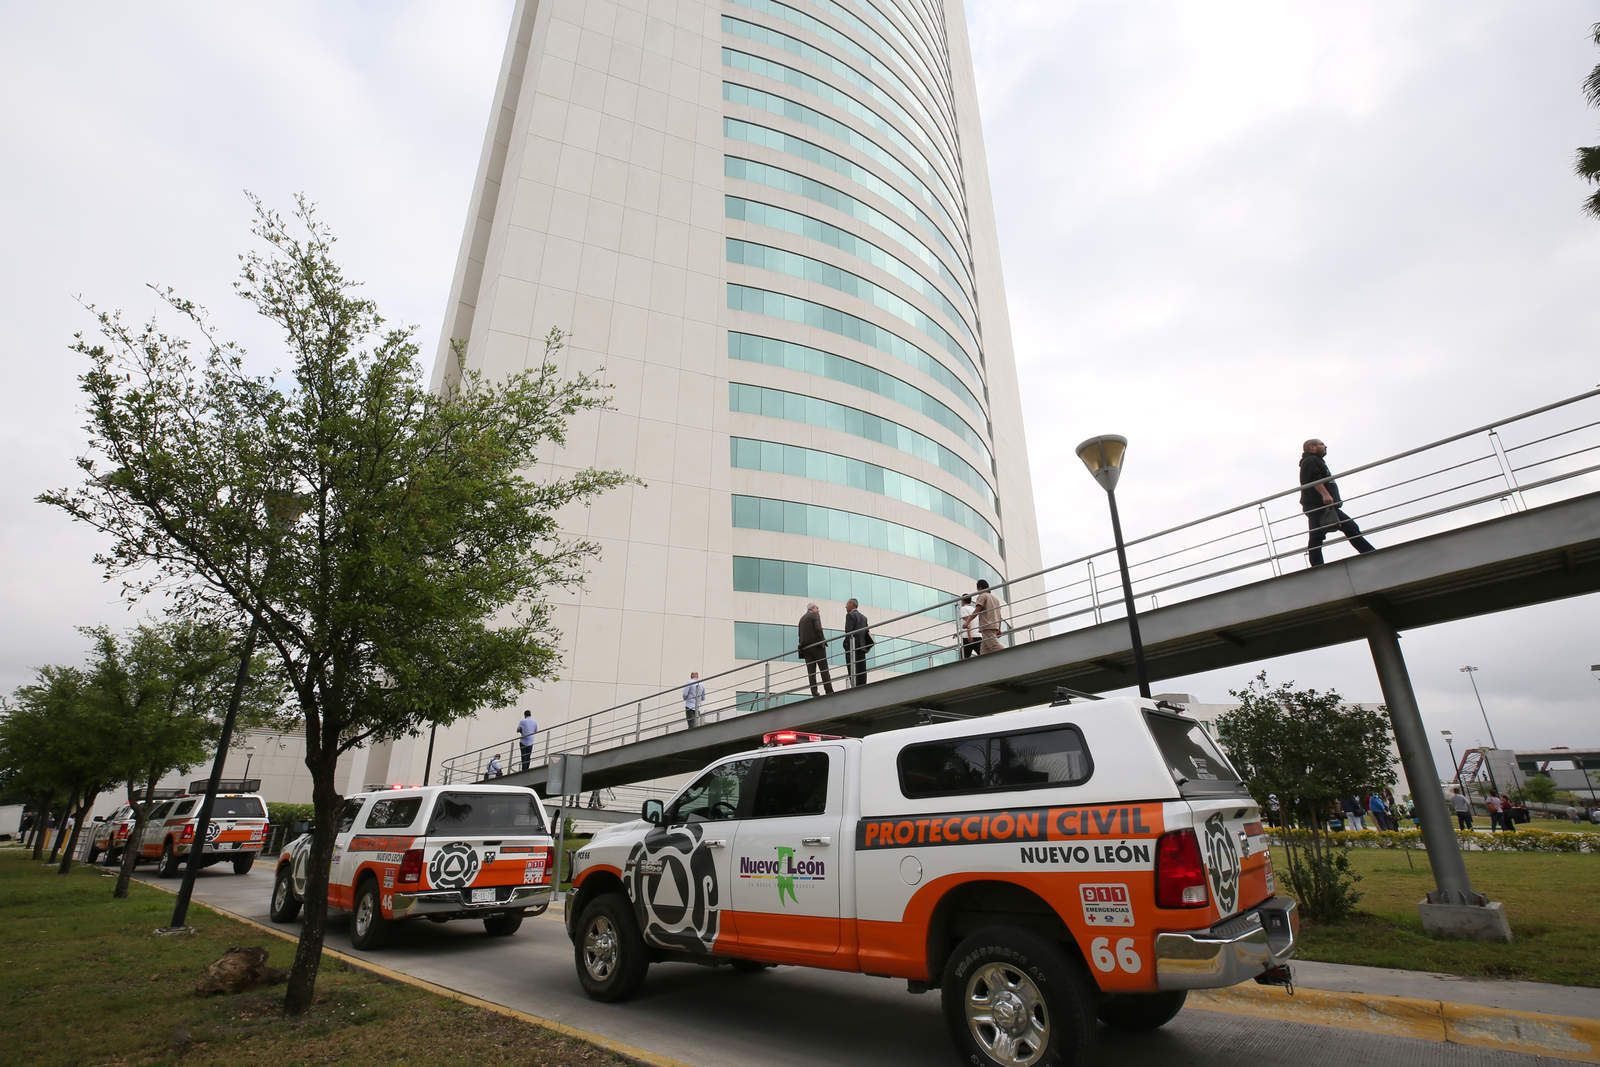 Protección Civil del estado informó que se desalojó a unas dos mil 500 personas del edificio estatal que consta de 37 pisos y es uno de los más altos de la entidad, sin que se reporten personas lesionadas, ni fallas estructurales. (ARCHIVO, 2017)